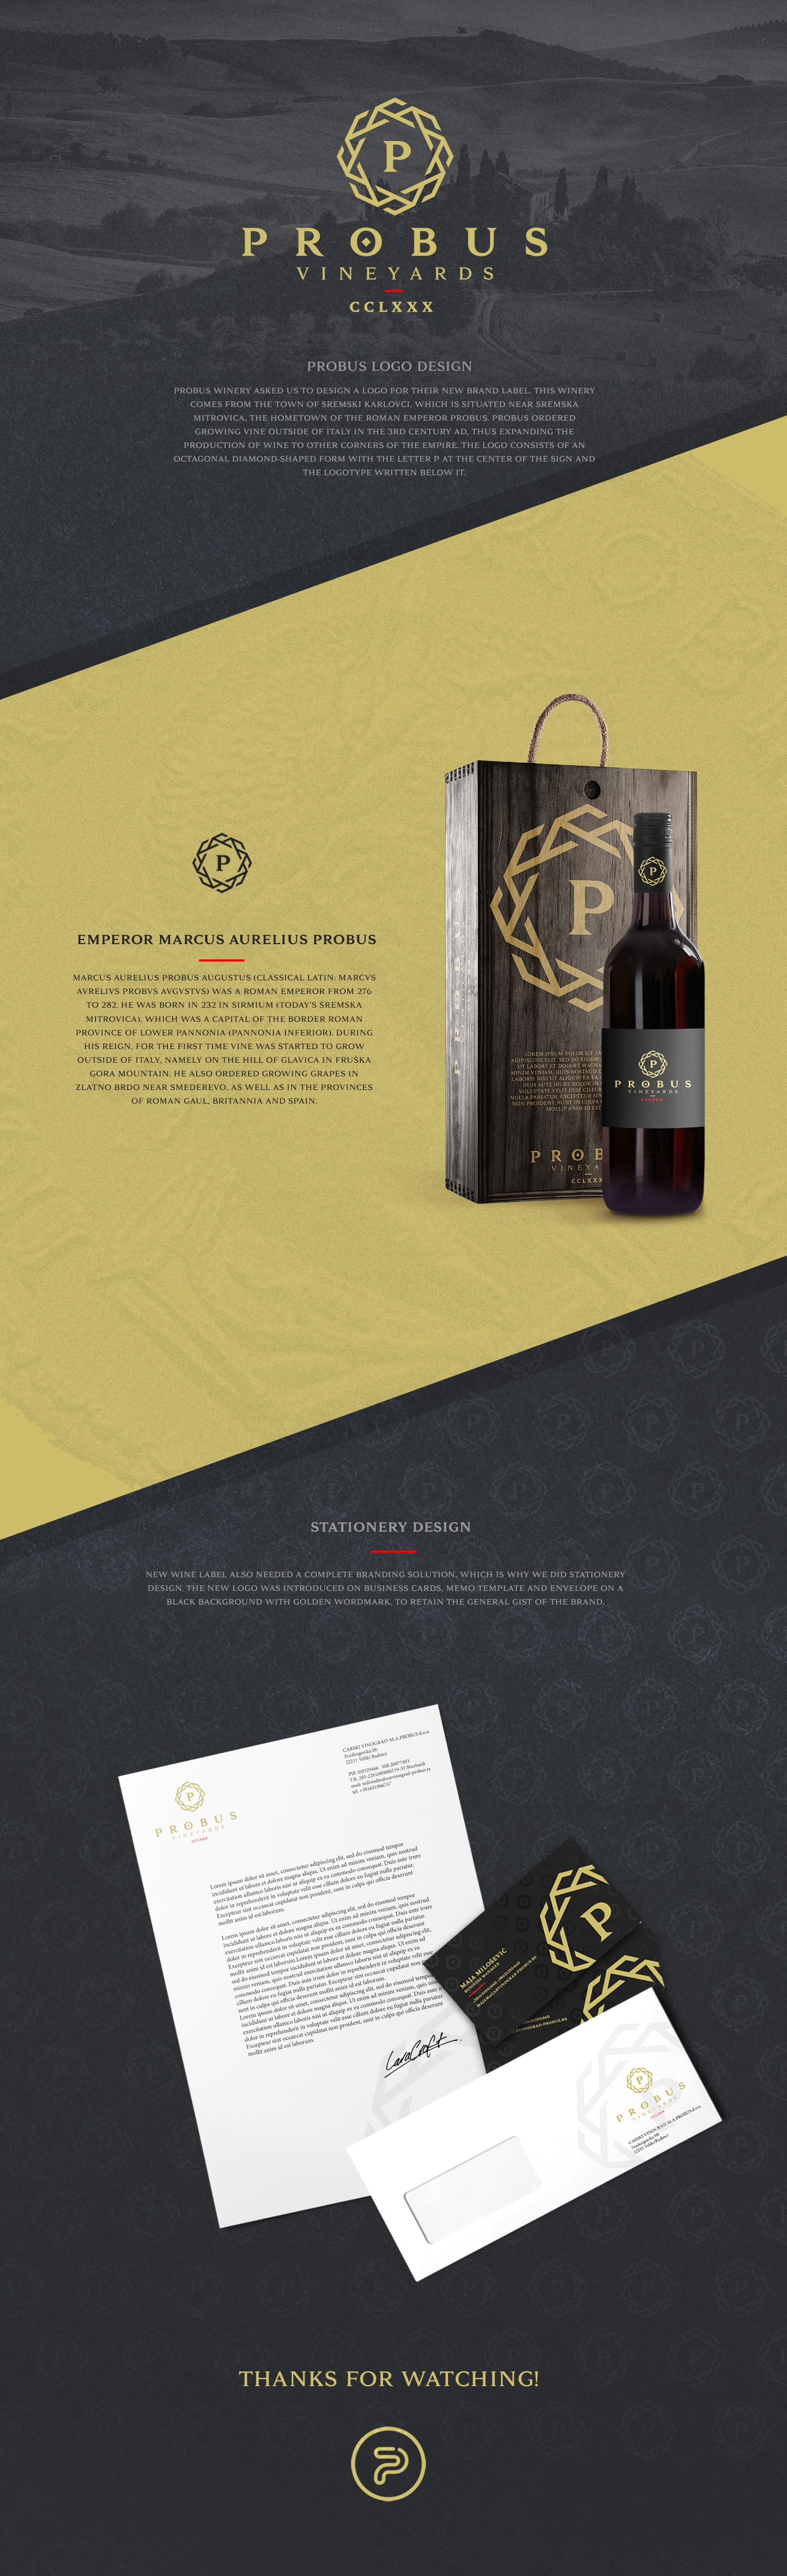 Etikette-Design Probus Wein